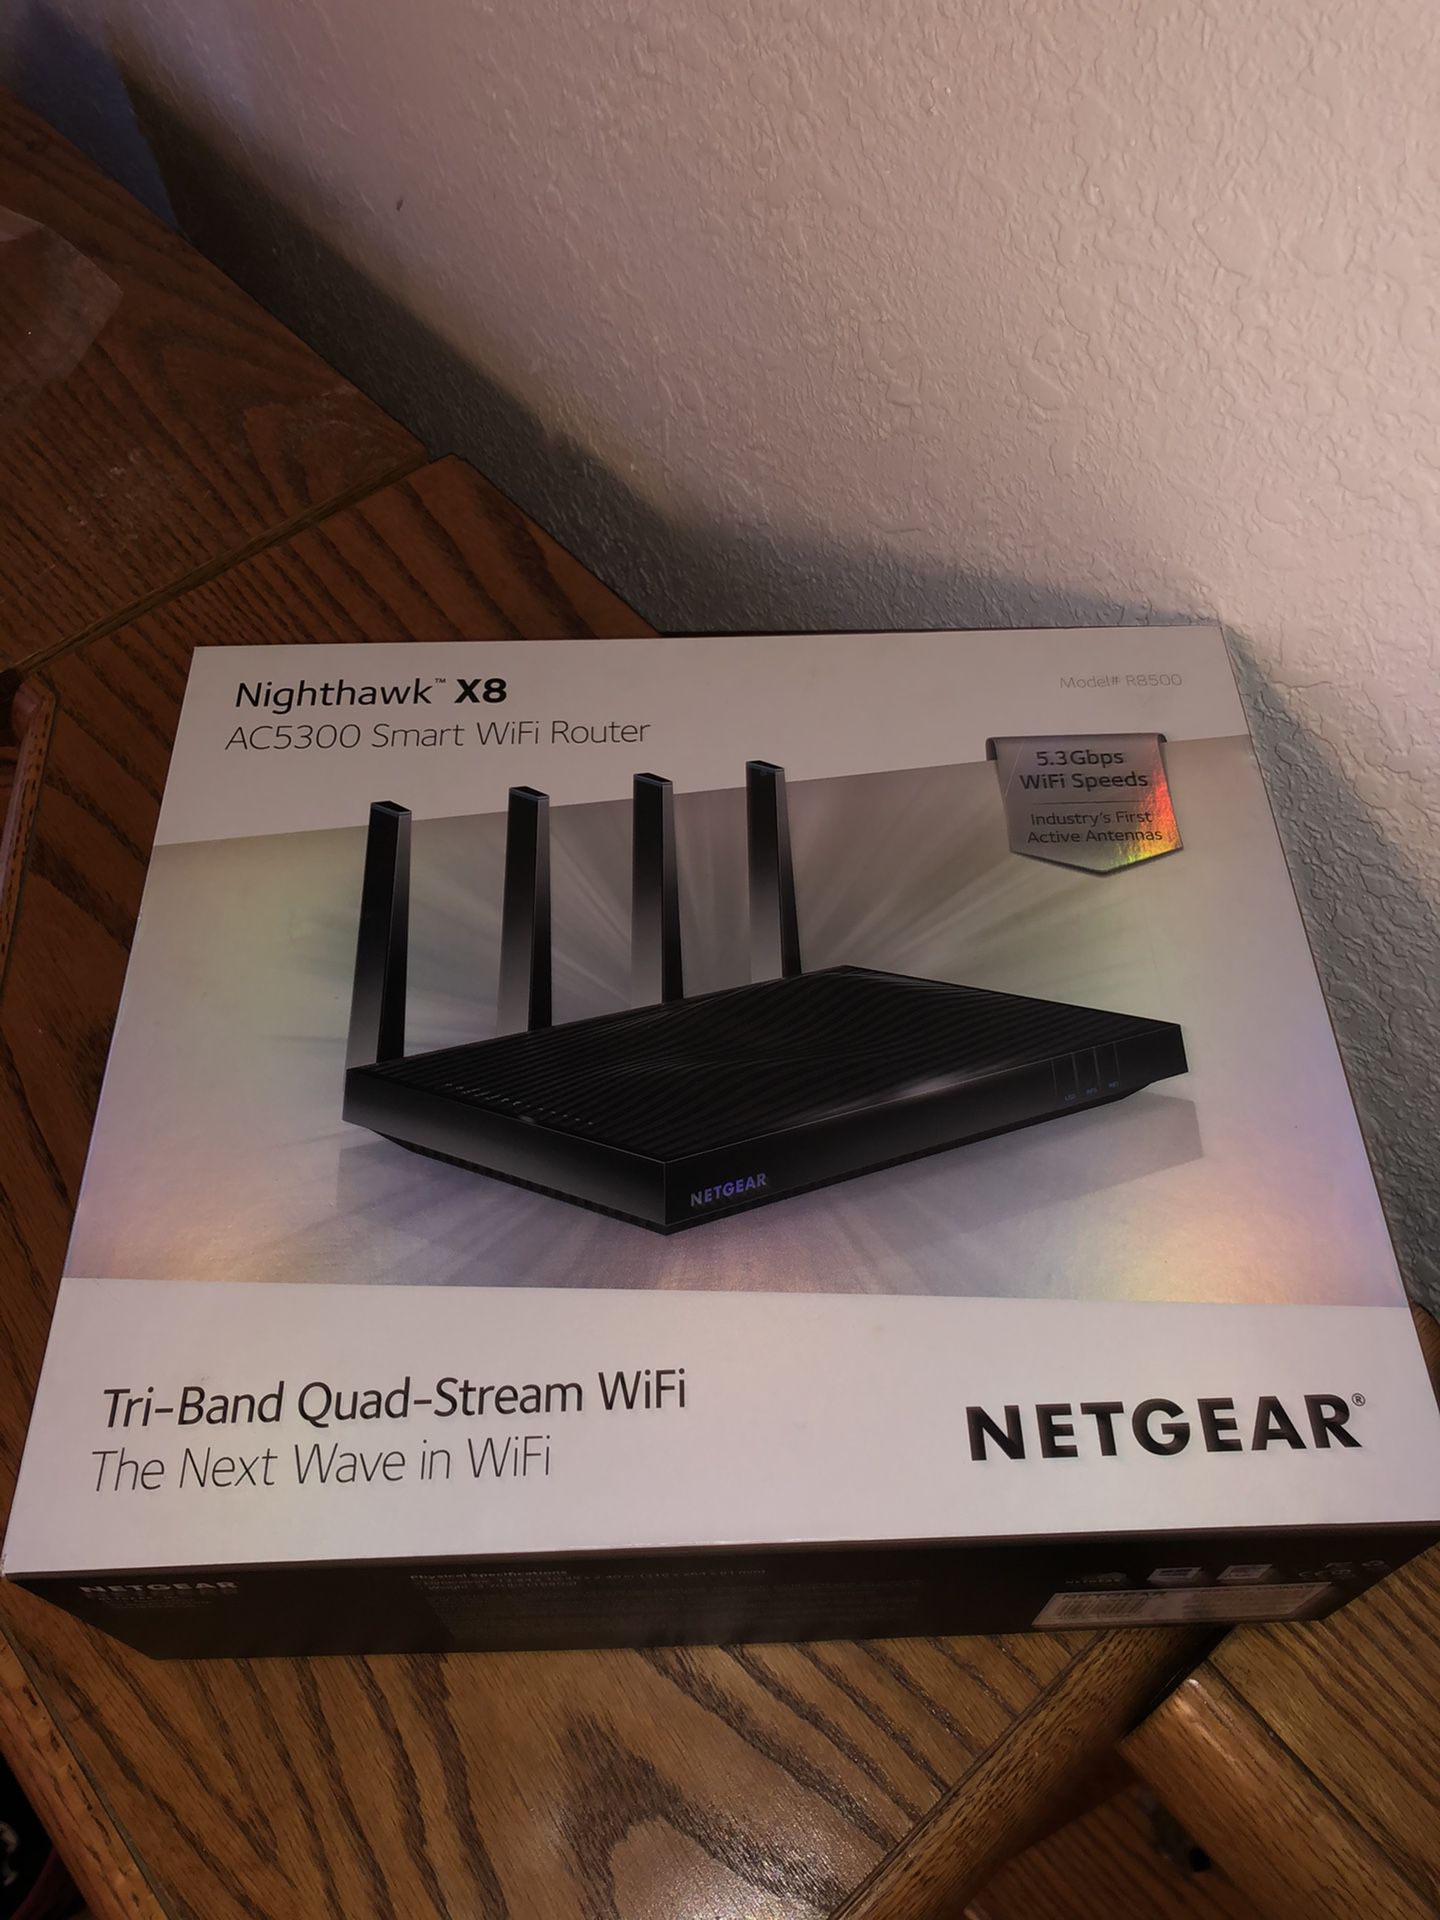 Netgear X8 nighthawk WiFi router